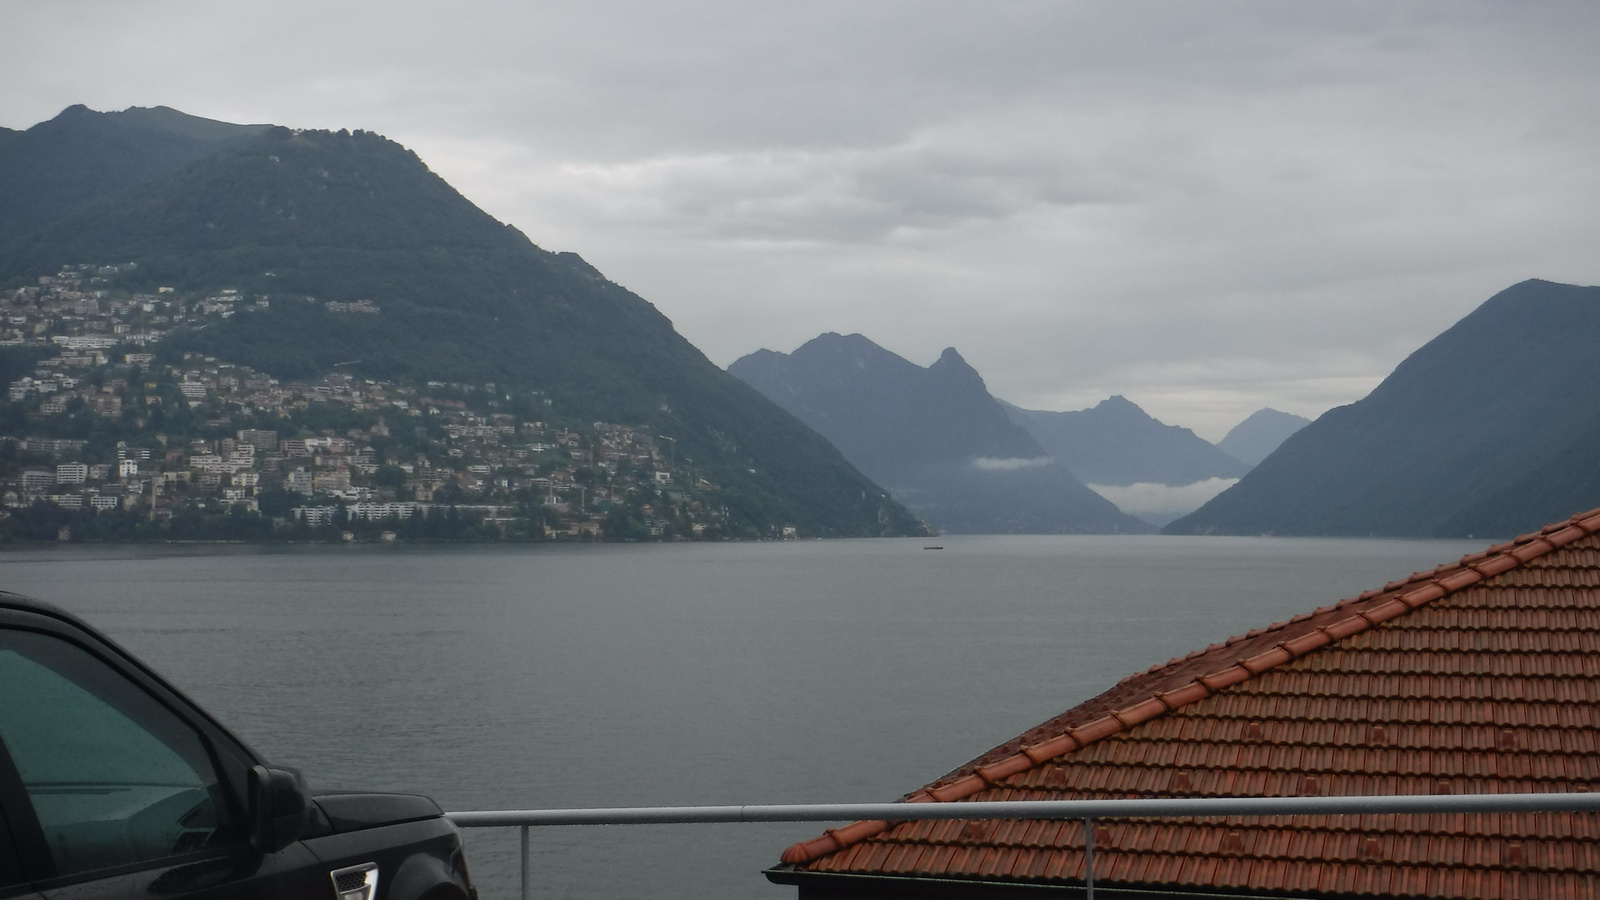 A Luganoi tó eszaki,olaszországba átnyúló öble